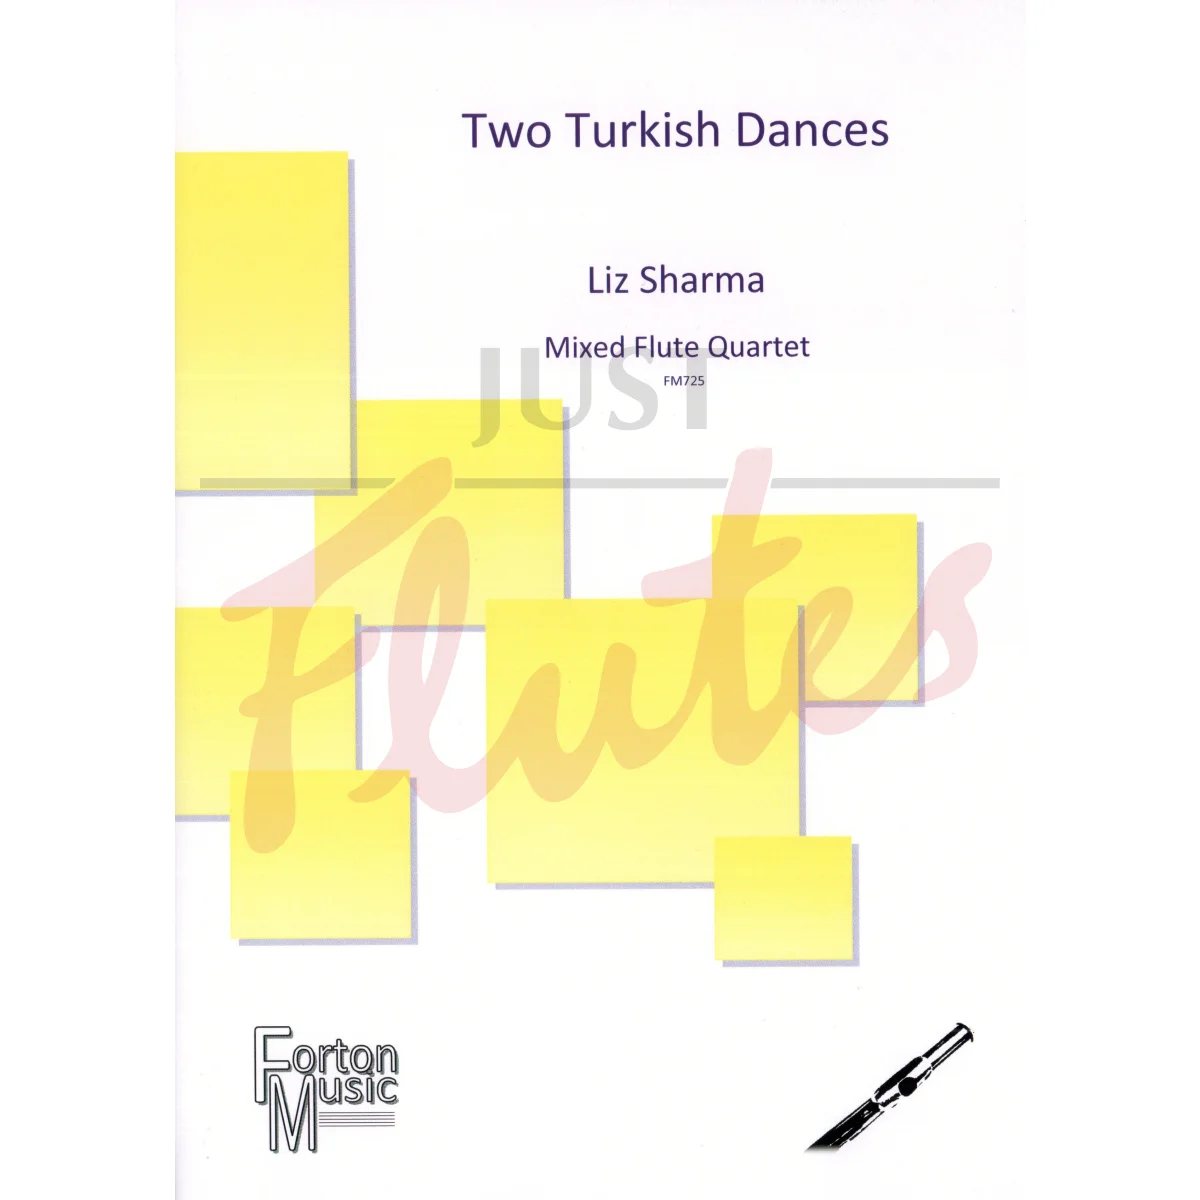 Two Turkish Dances for Mixed Flute Quartet